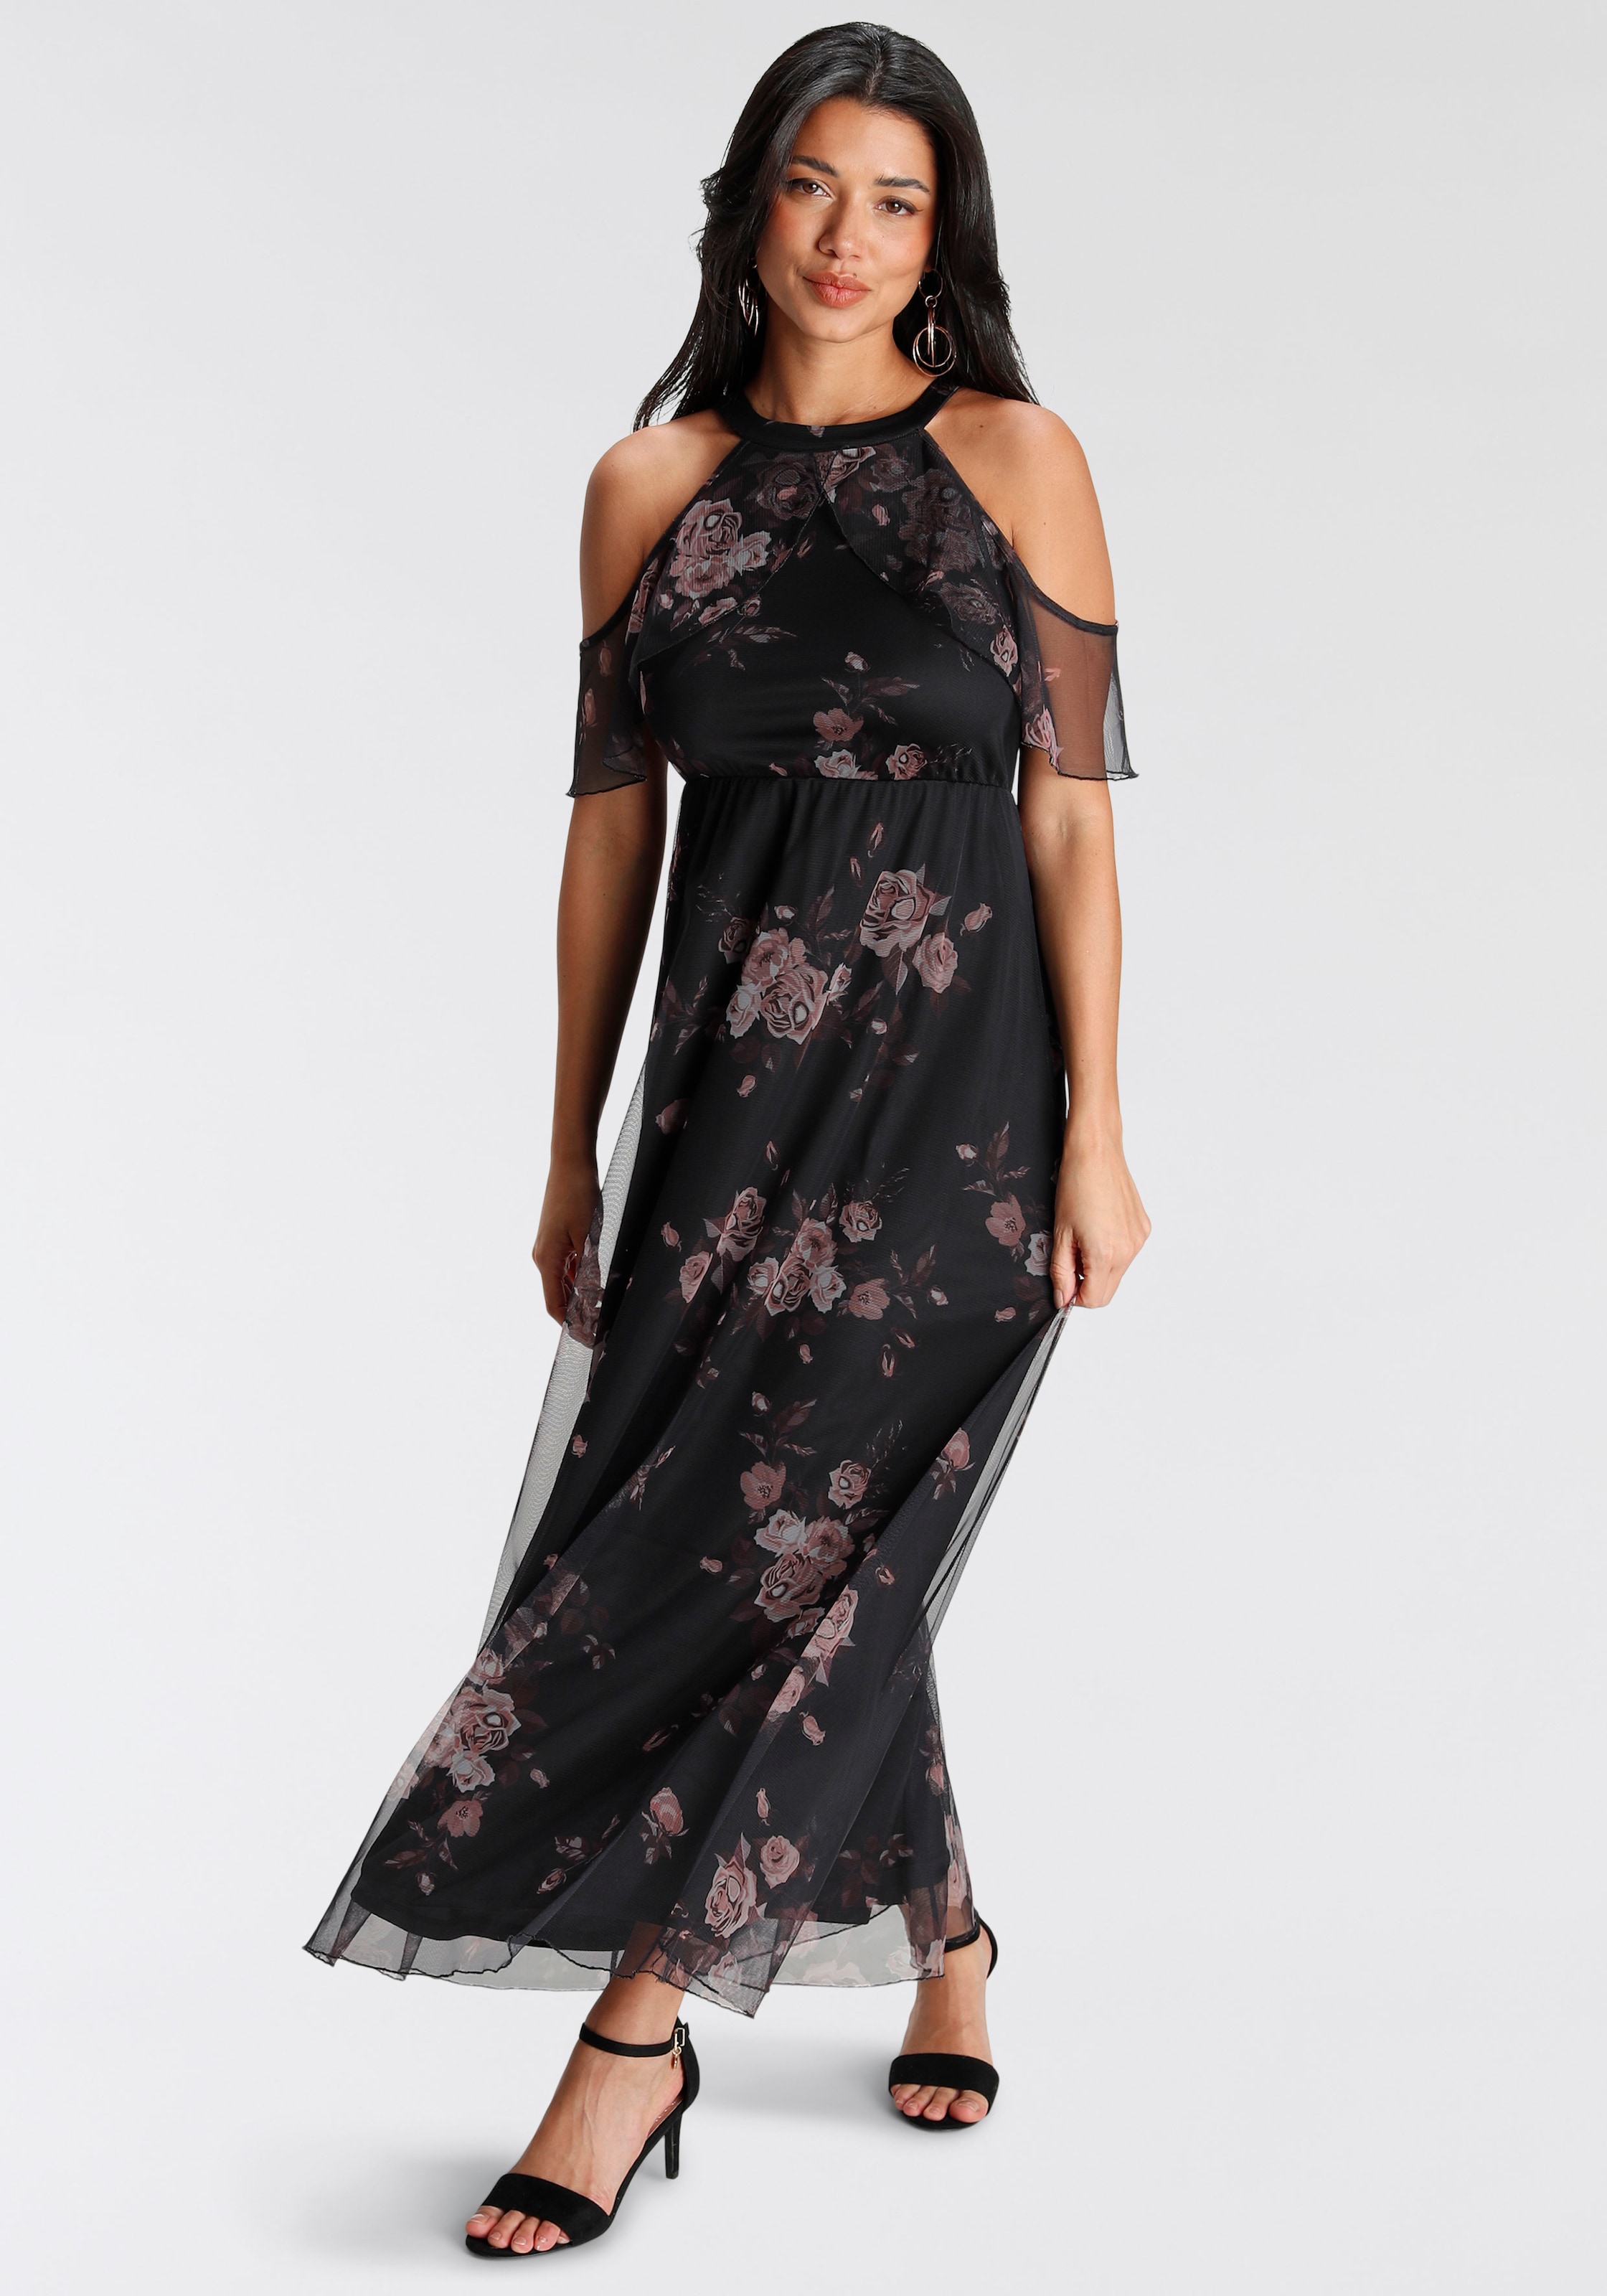 Melrose Abendkleid, Shop Mesh weichem im OTTO aus Online